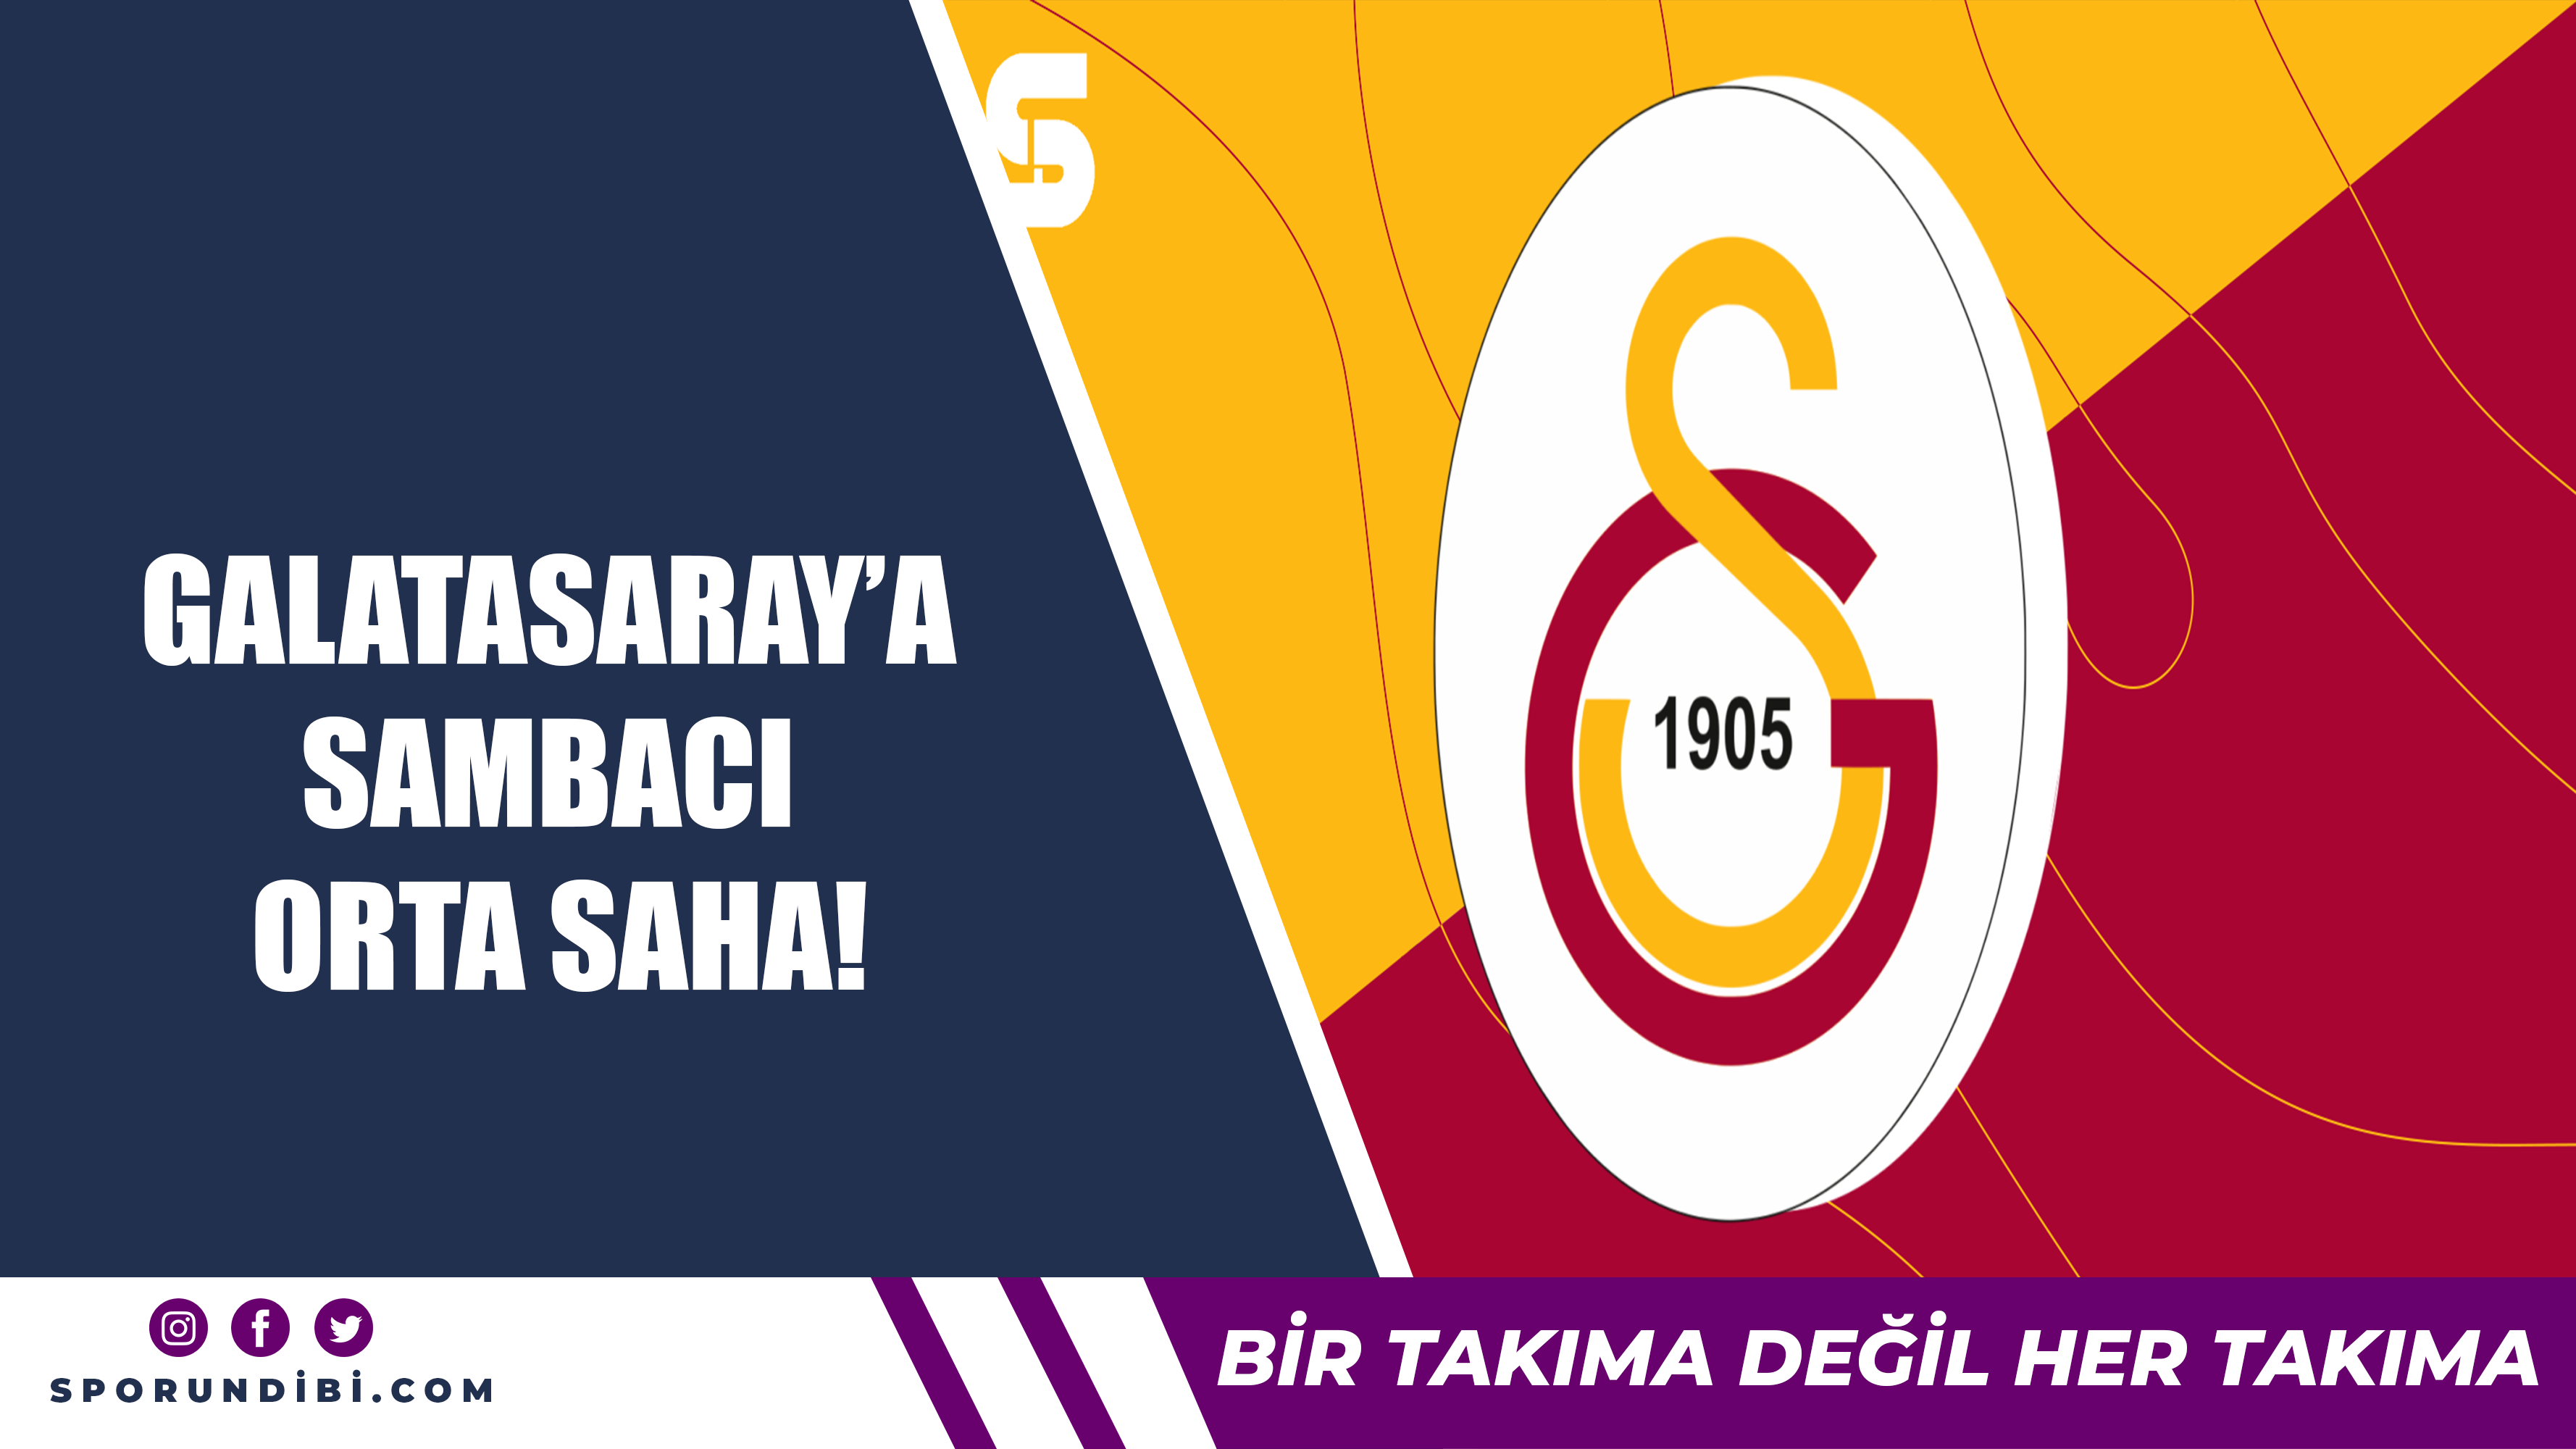 Galatasaray'a sambacı orta saha!